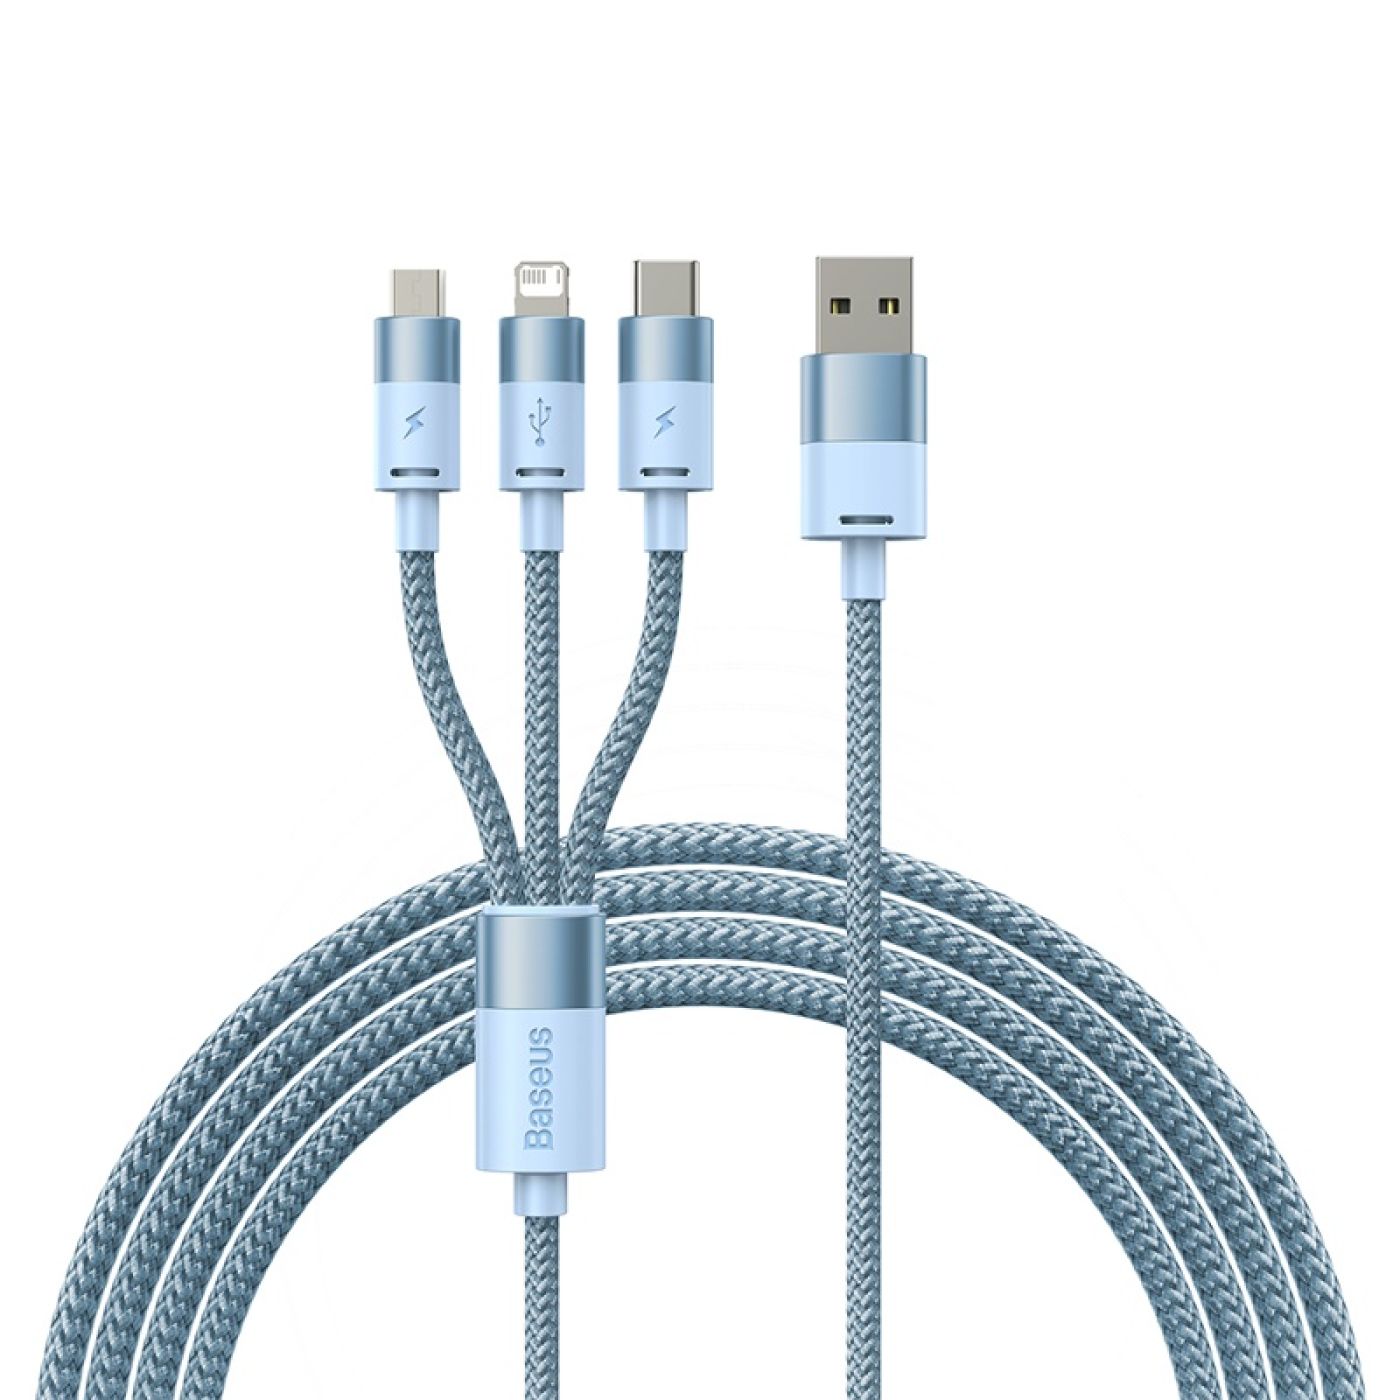 Cáp sạc nhiều đầu Baseus StarSpeed 1-for-3 Fast Charging Data Cable USB to M+L+C 3.5A 1.2m